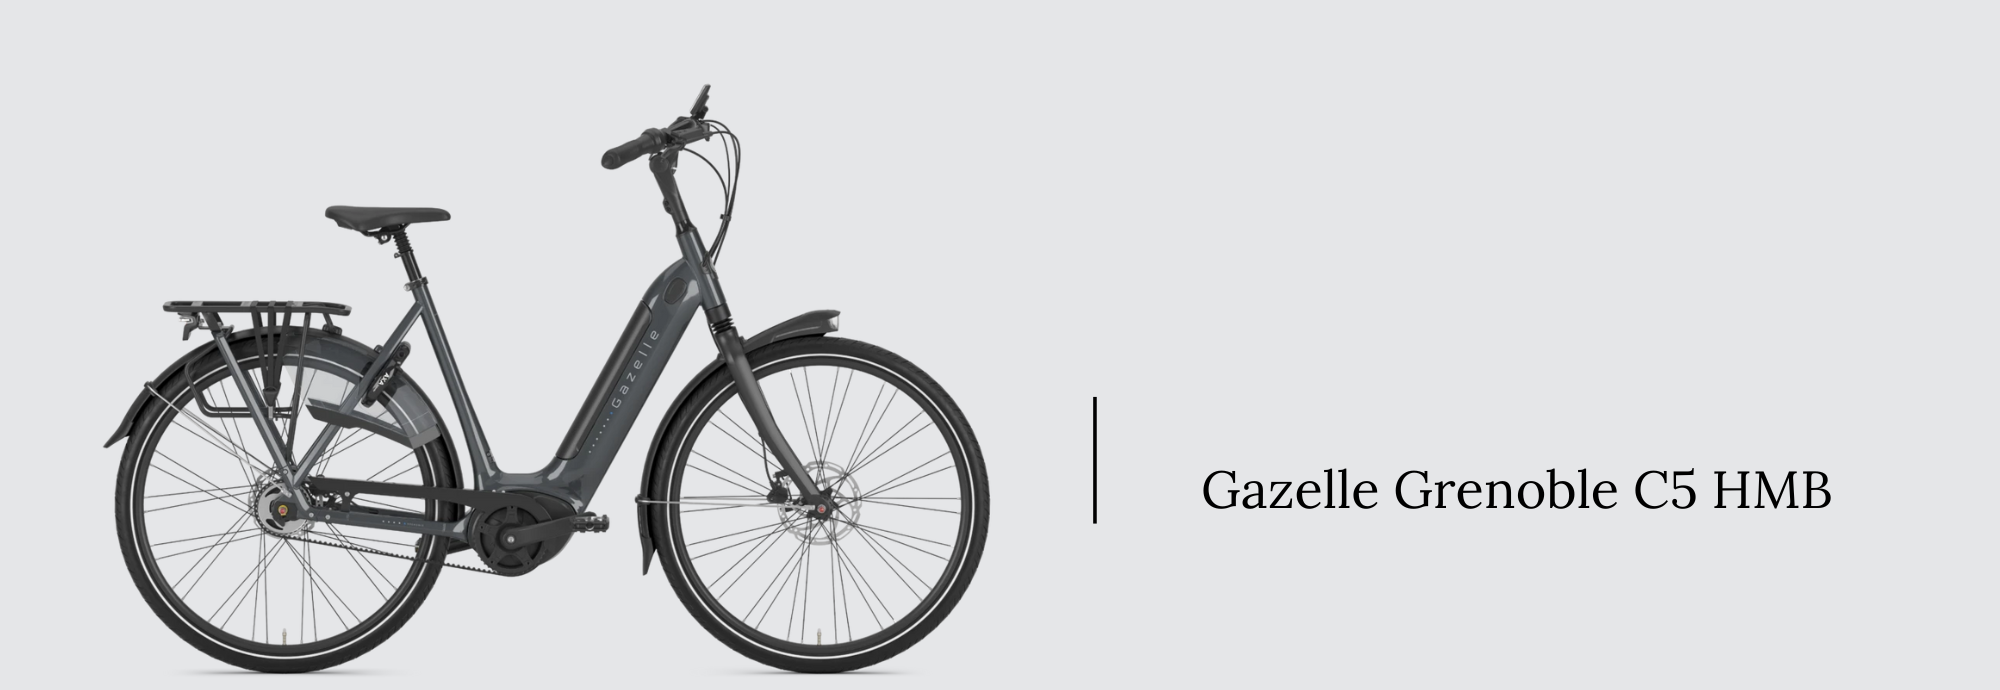 gazelle_grenoble_c5_hmb_bosch_performance_line_e-bike_motor